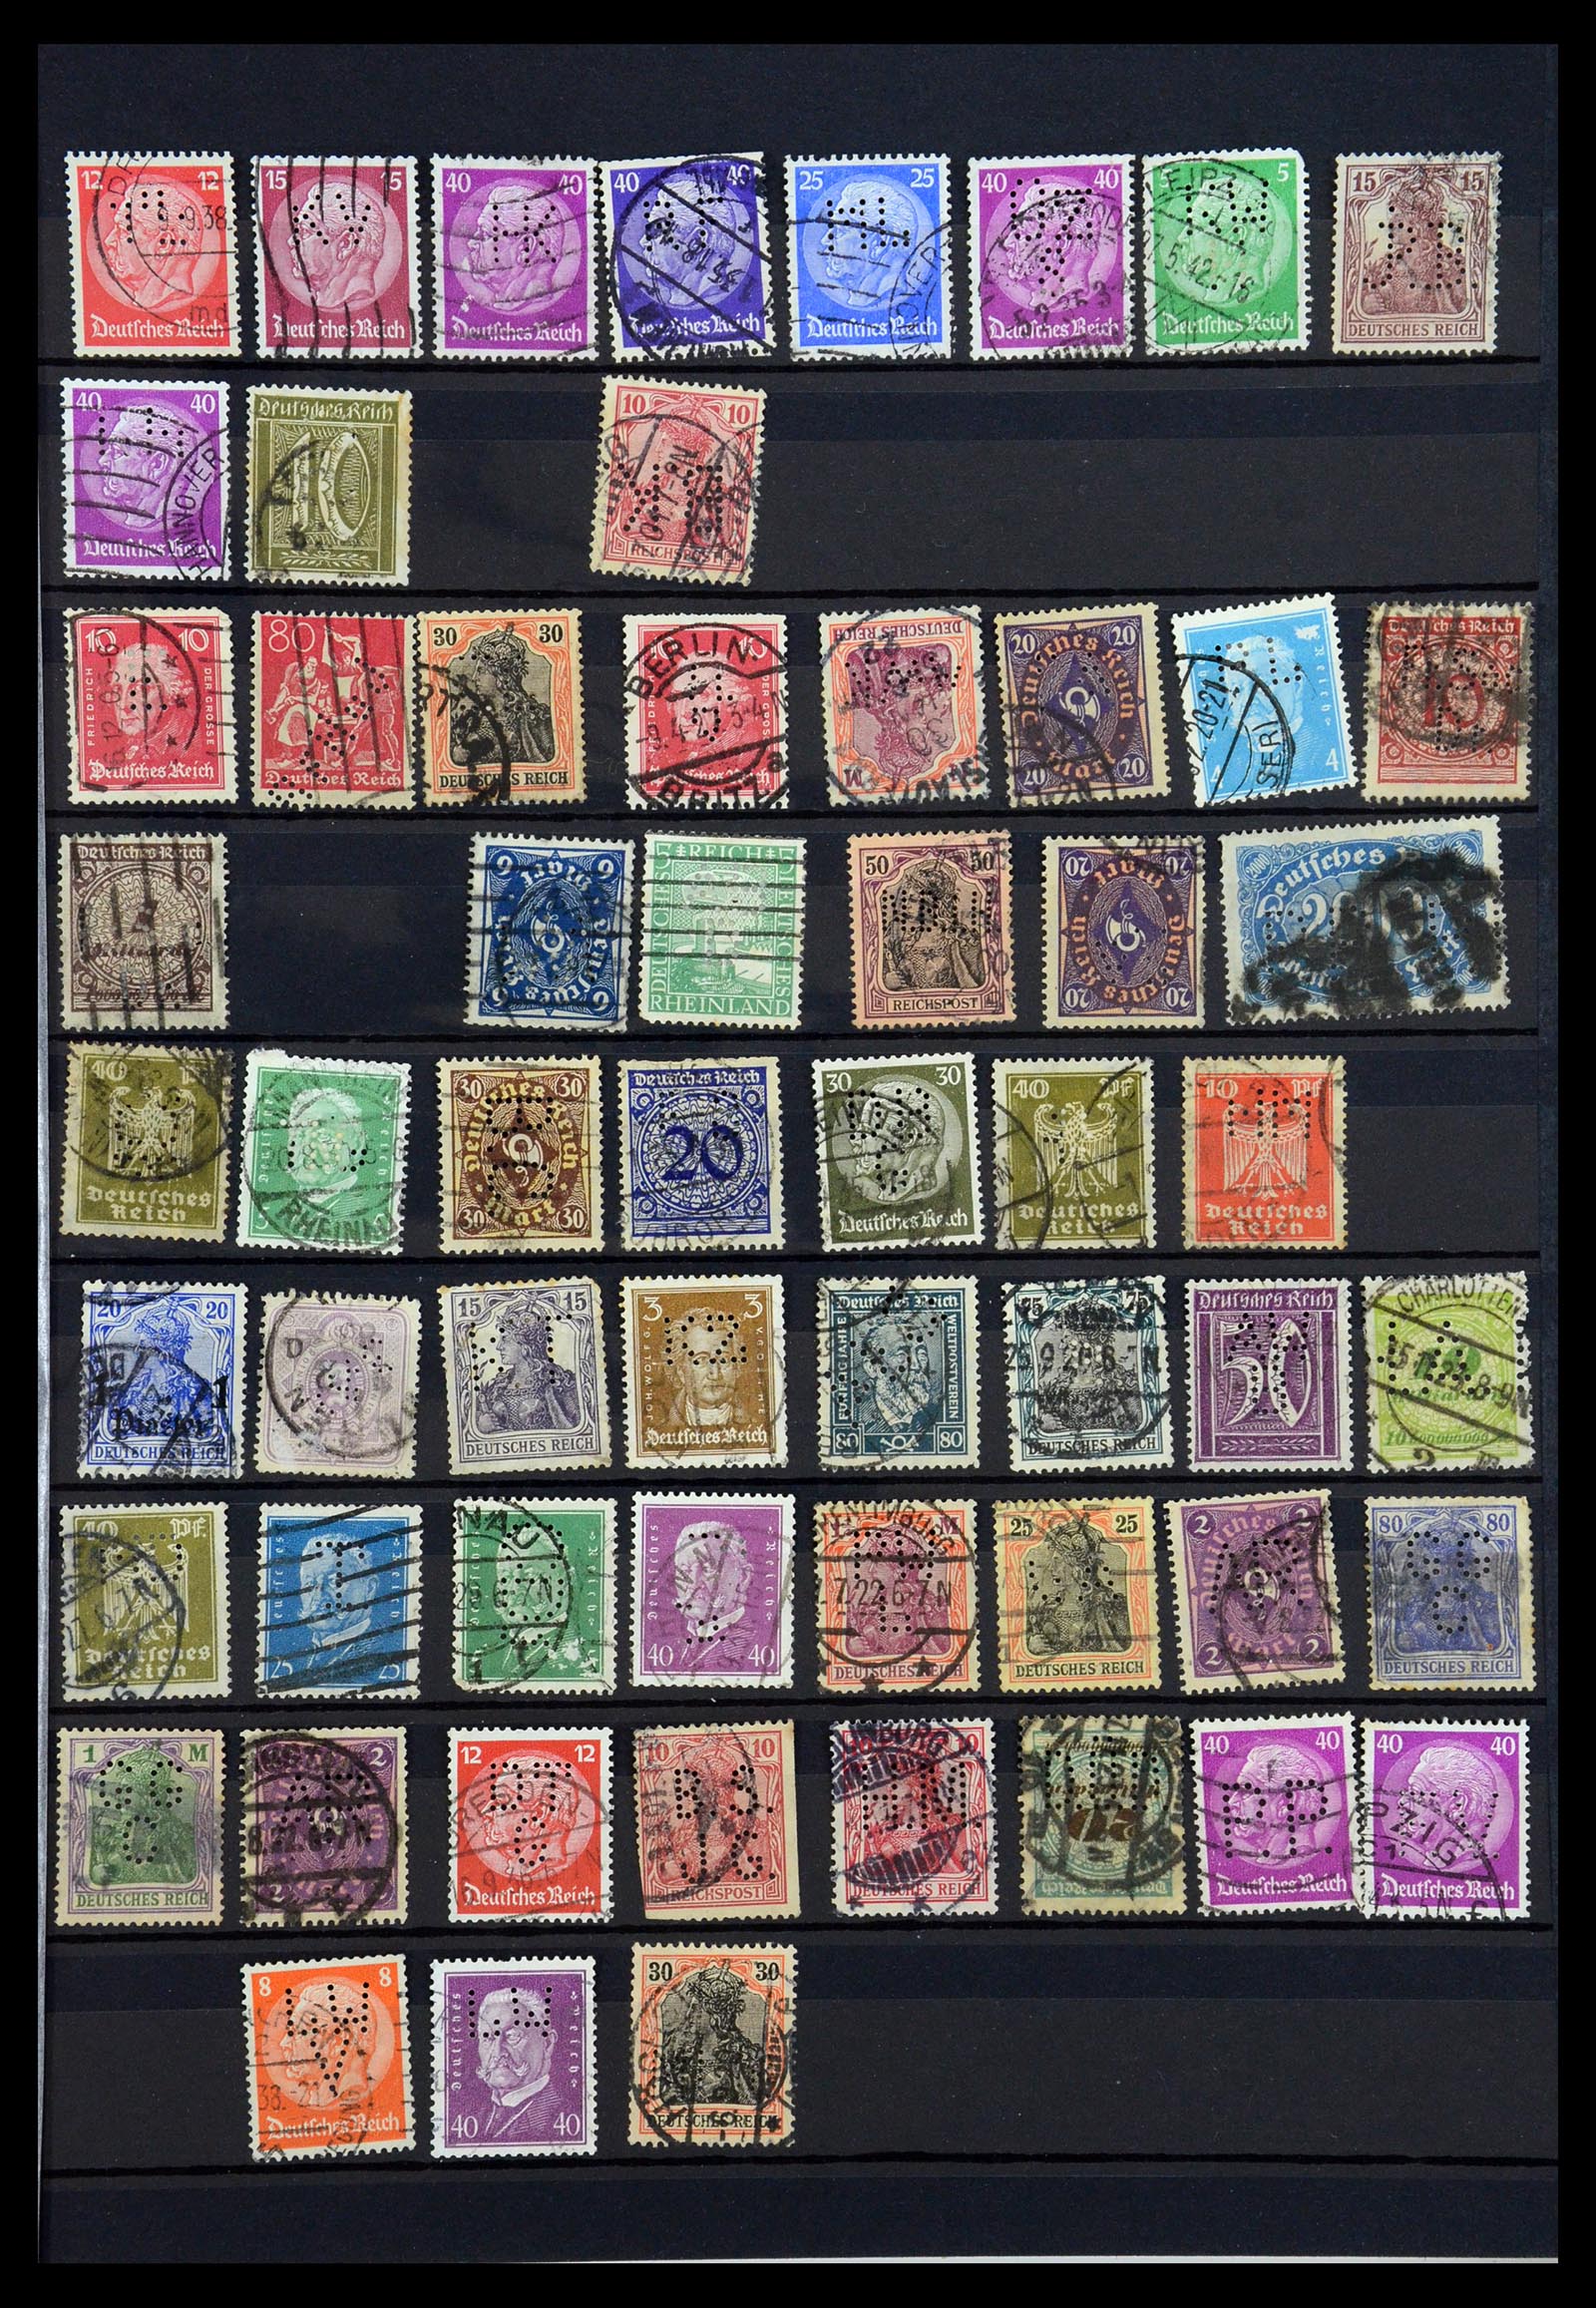 35183 045 - Stamp Collection 35183 German Reich perfins 1880-1945.